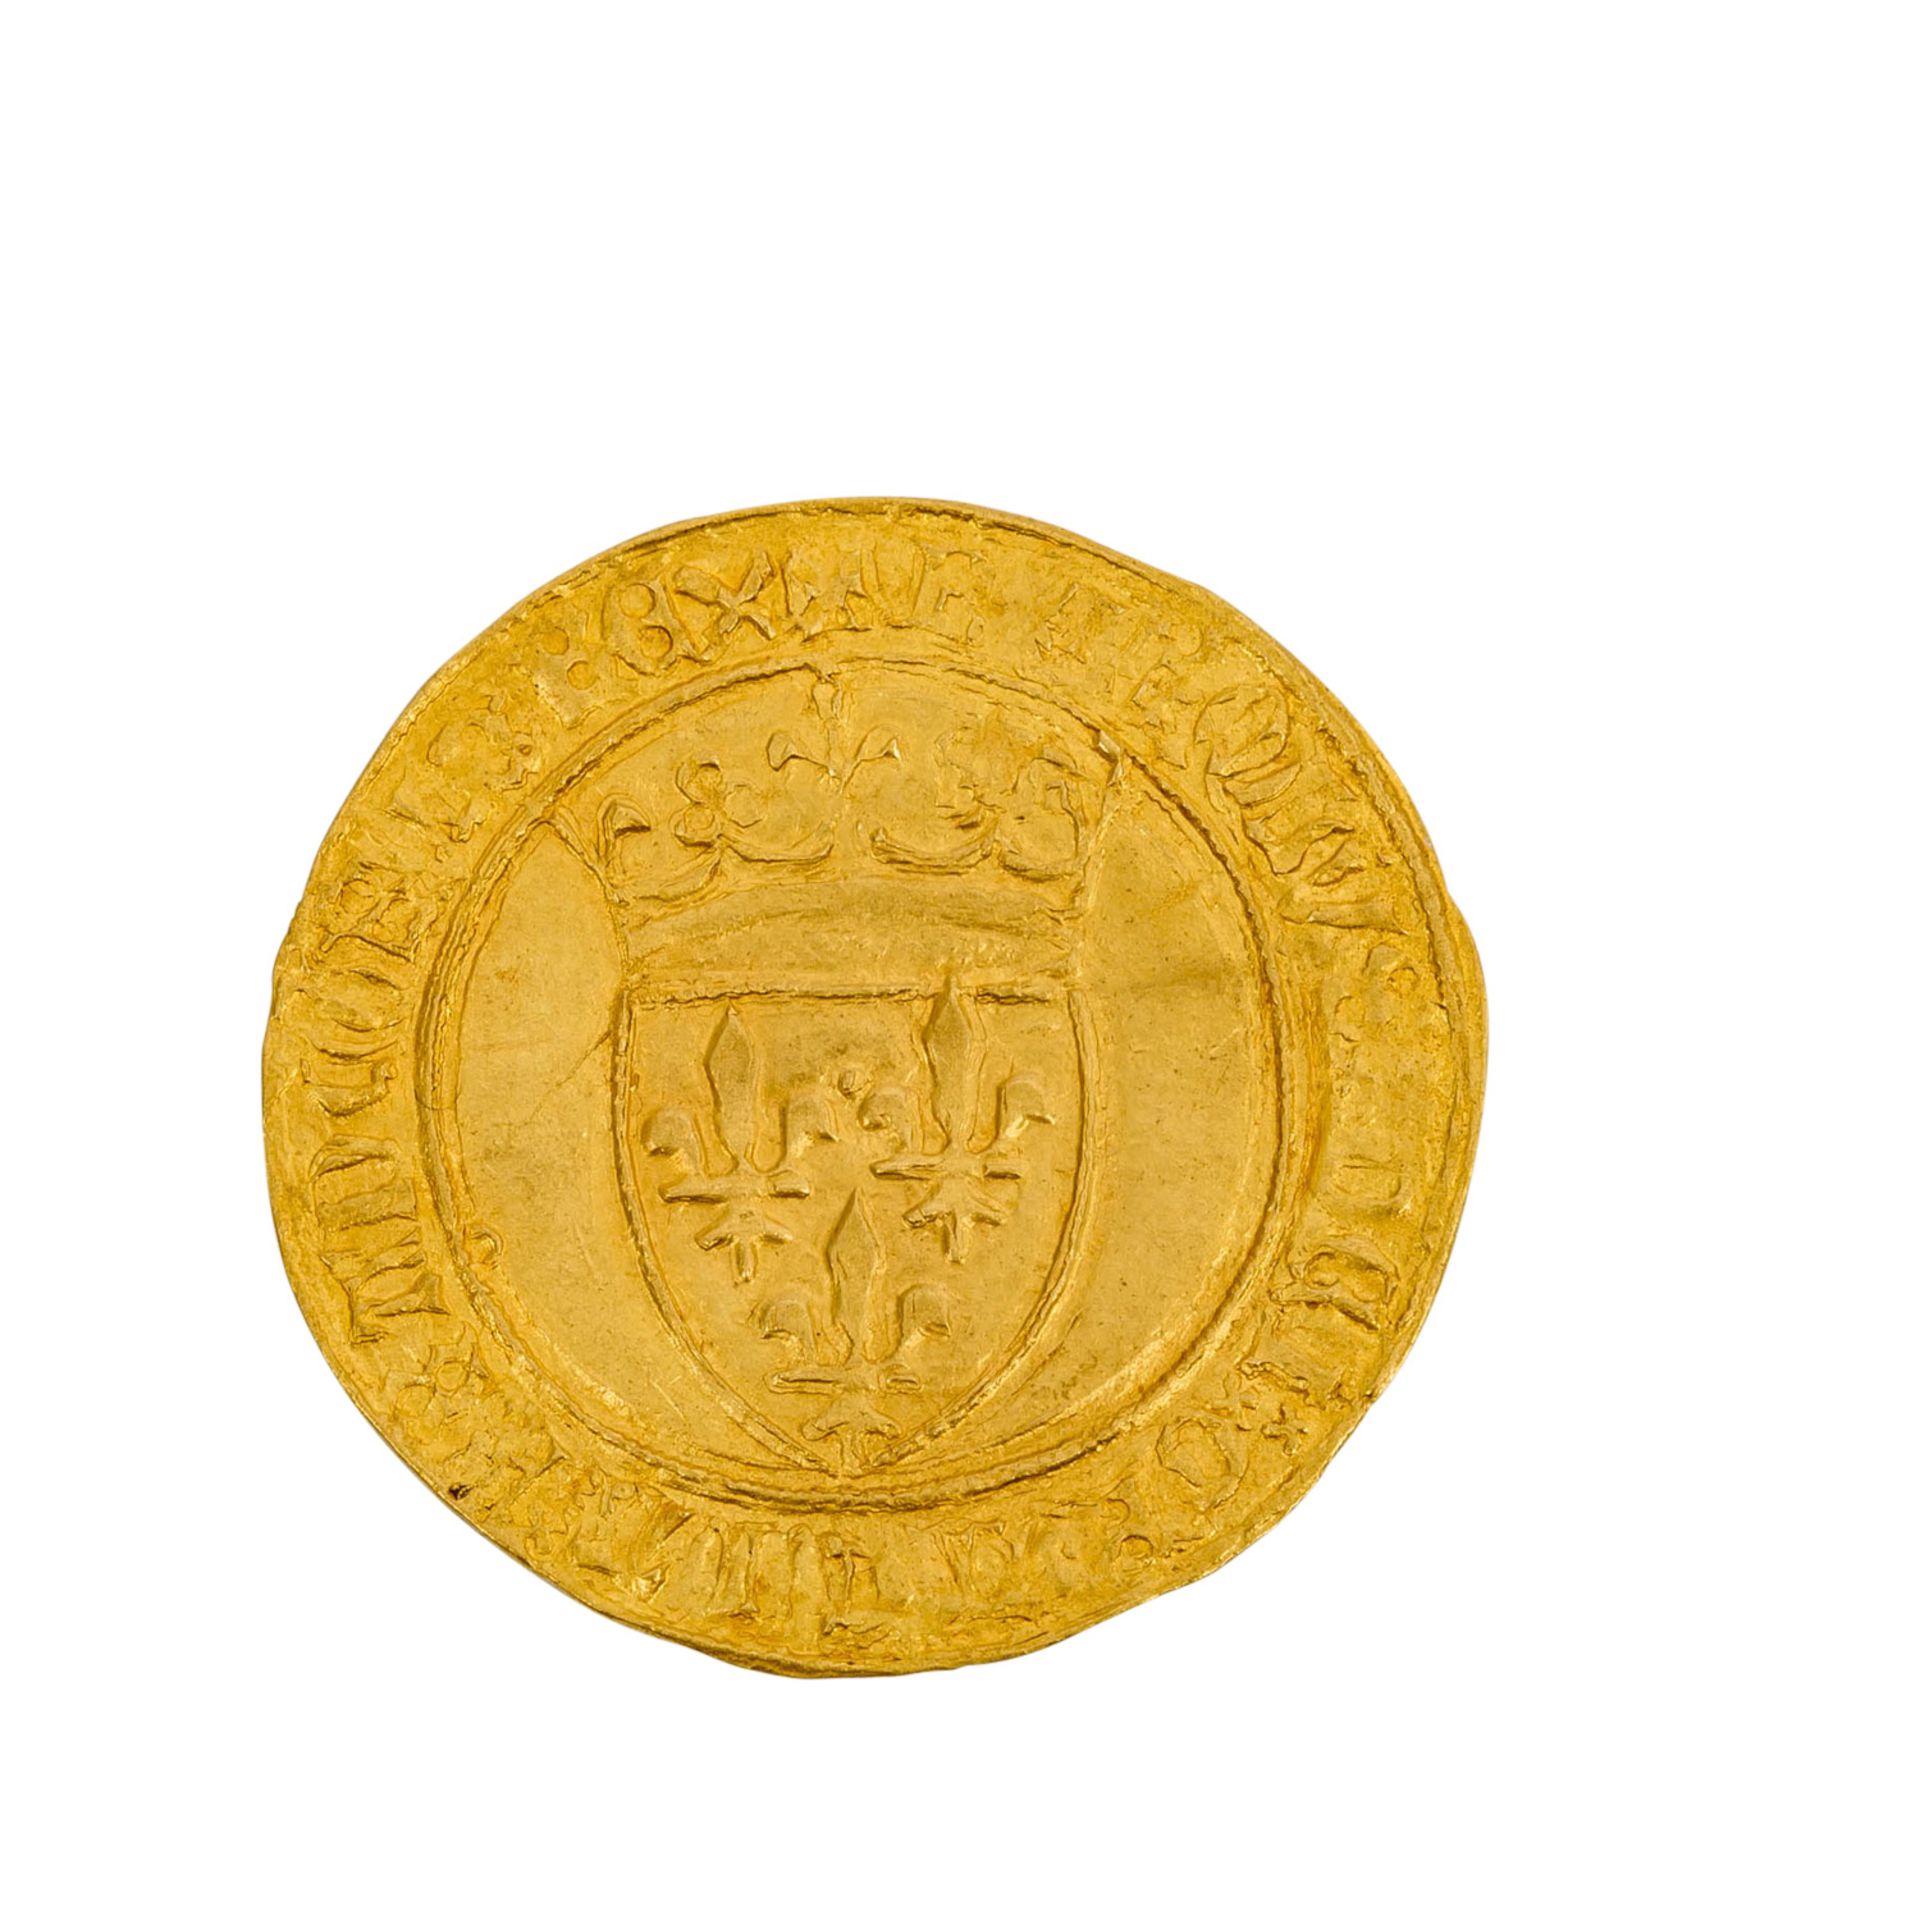 Frankreich - Ecu d'or à la couronne o. J., König Karl VI. 1380-1422, - Image 2 of 3